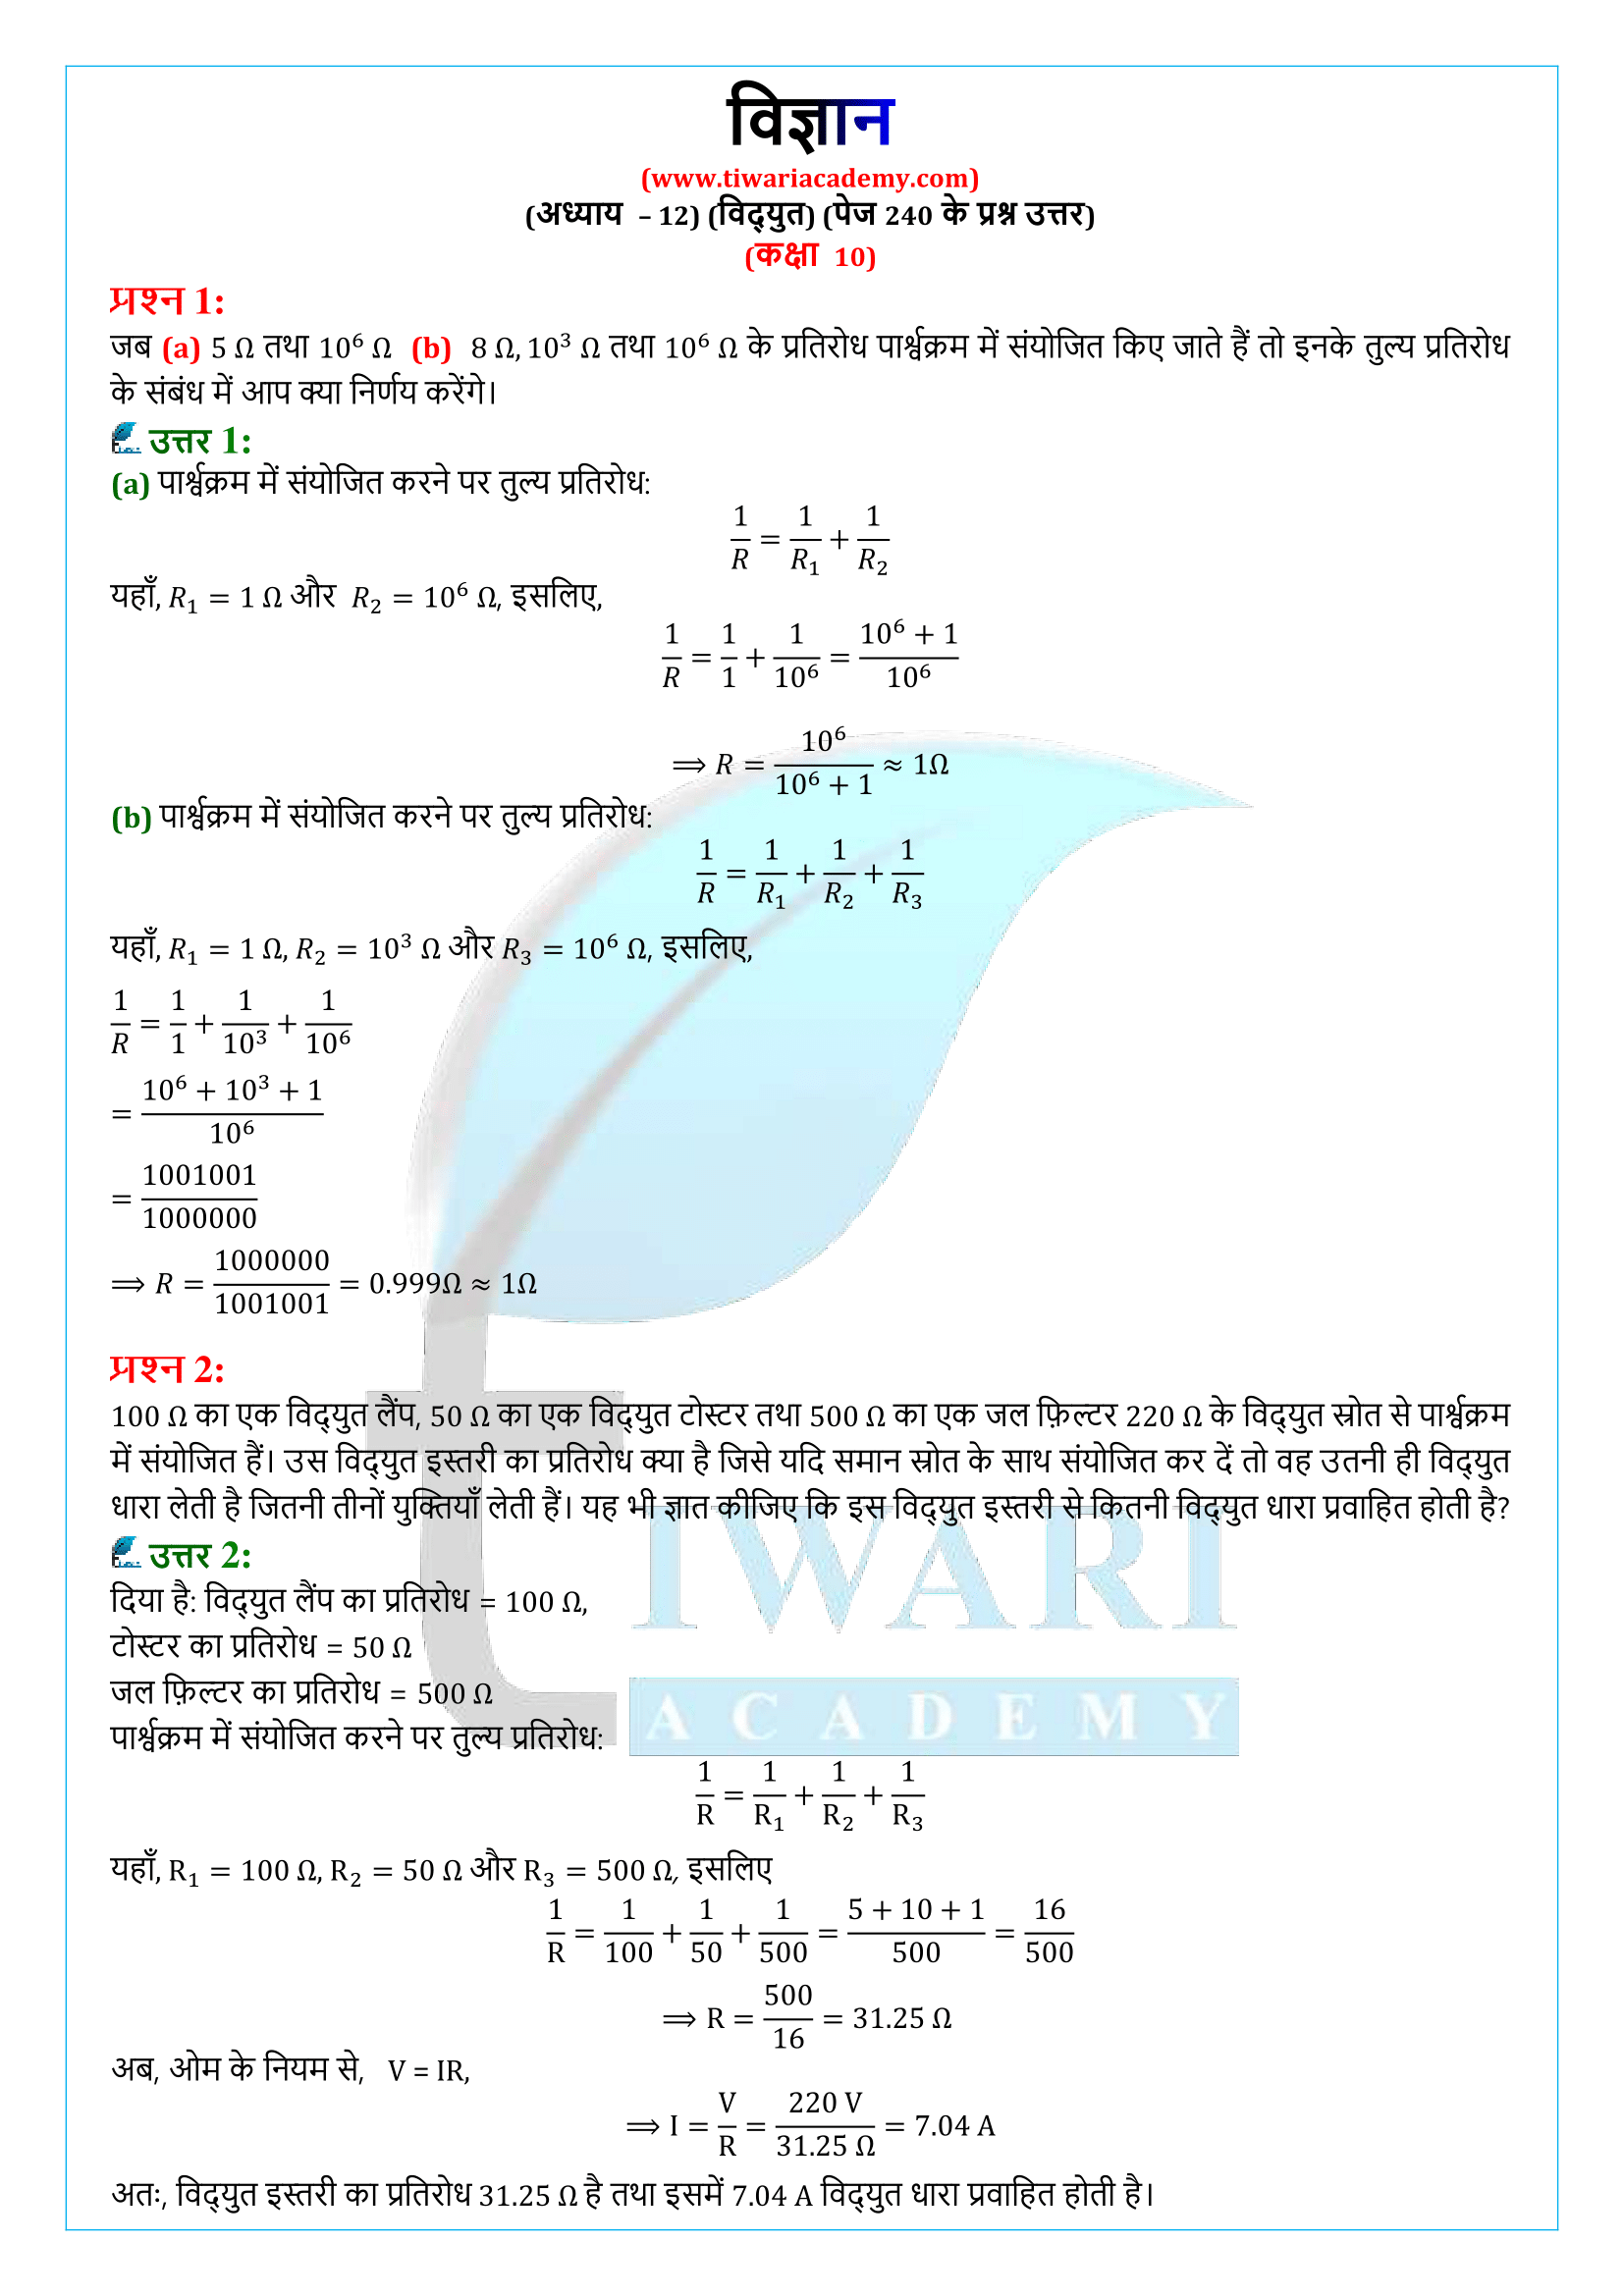 कक्षा 10 विज्ञान अध्याय 12 पेज 240 के प्रश्न उत्तर